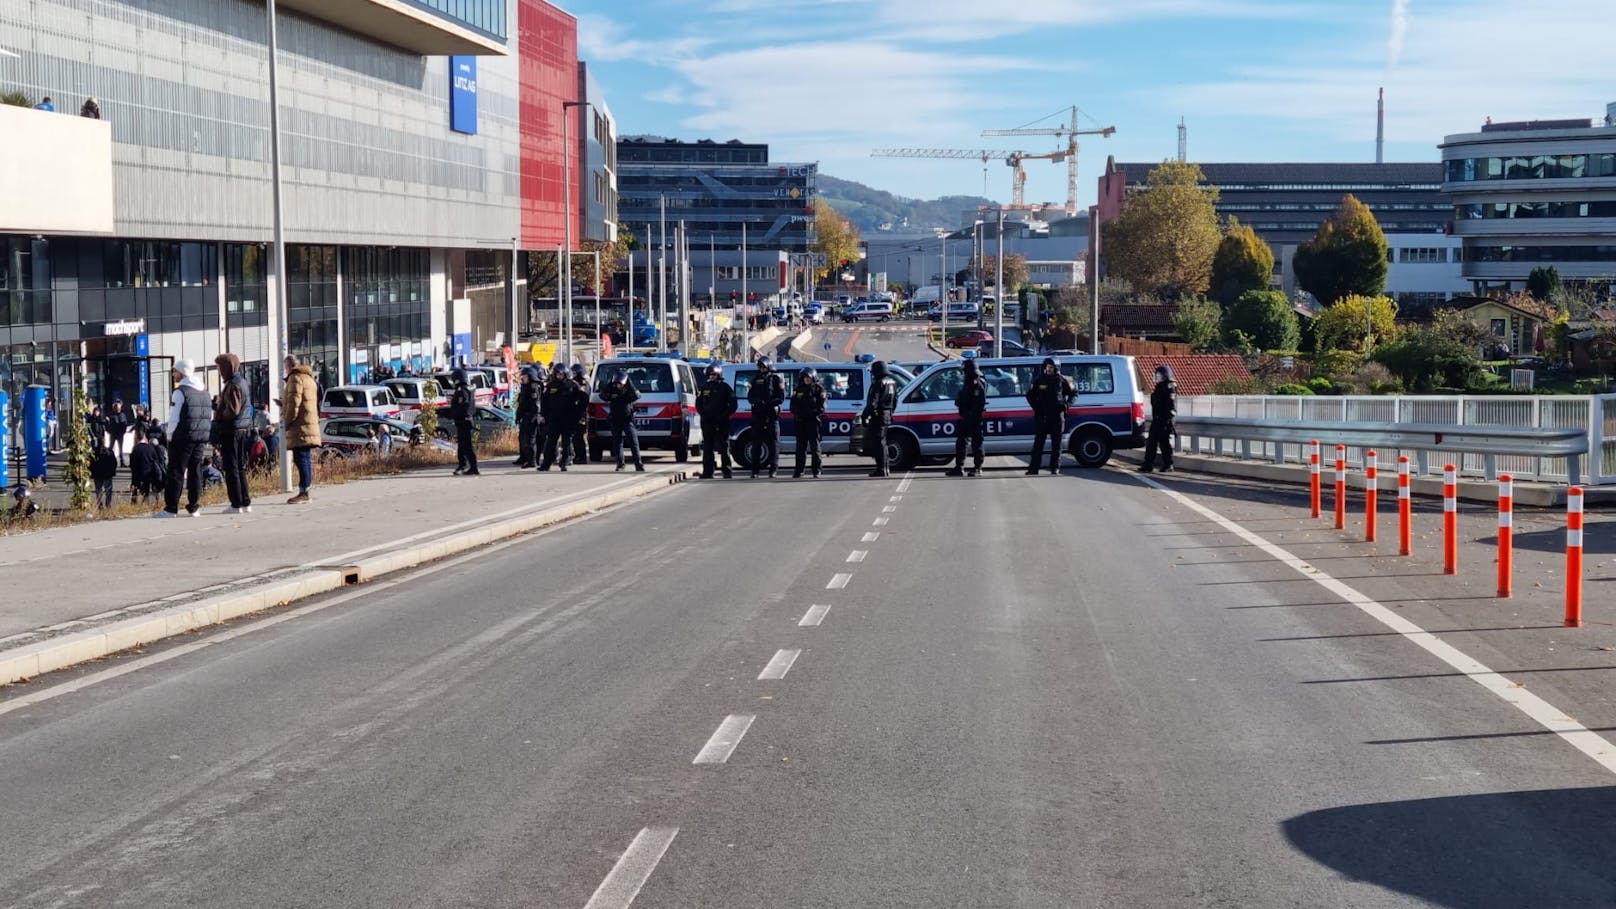 Die Polizei sperrt die Straße auf der Neuen Eisenbahnbrücke, um ein Aufeinandertreffen der verschiedenen Fan-Lager zu verhindern.